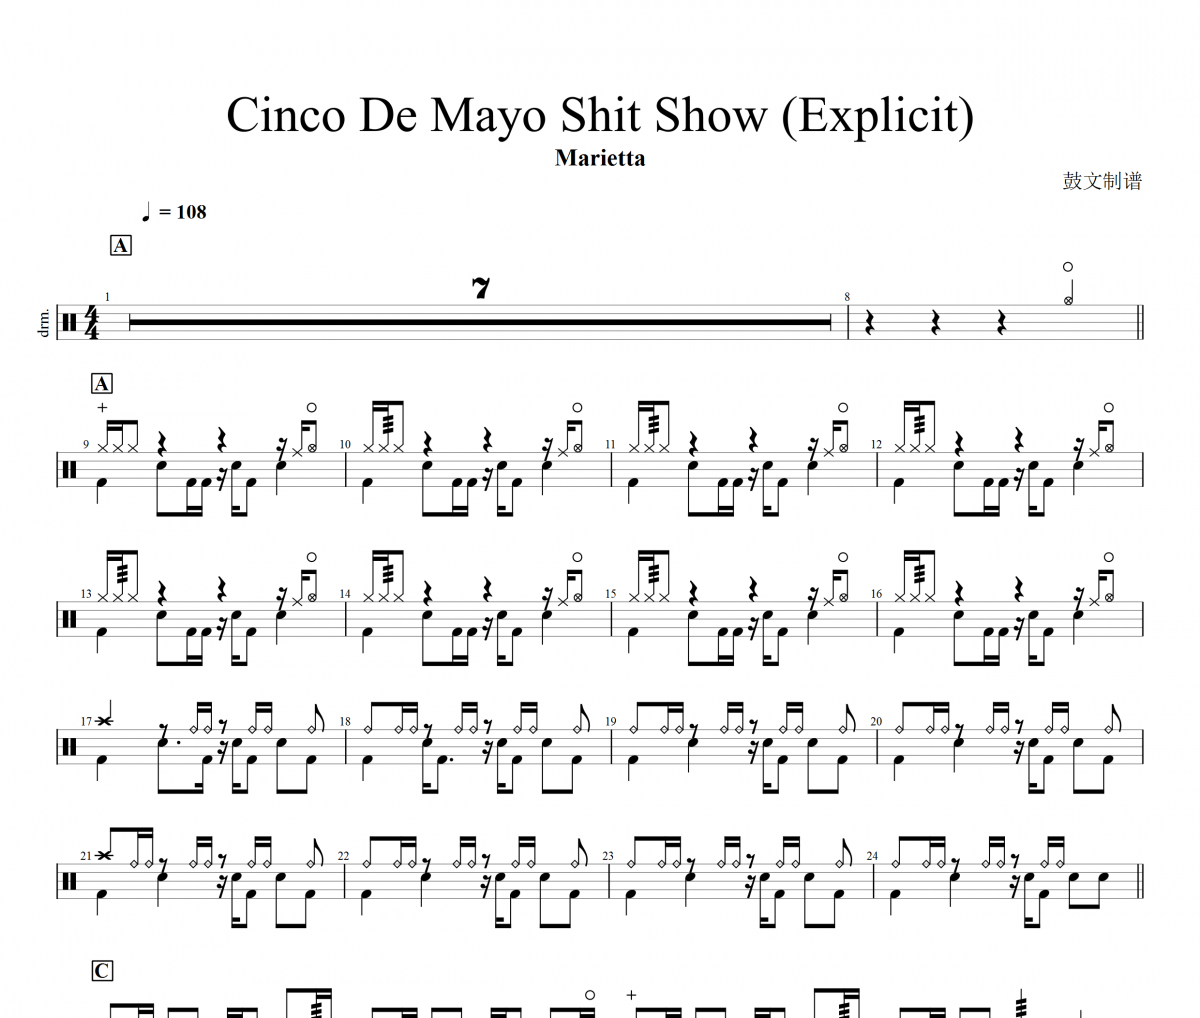 Marietta-Cinco De Mayo Shit Show (Explicit)架子鼓谱爵士鼓曲谱